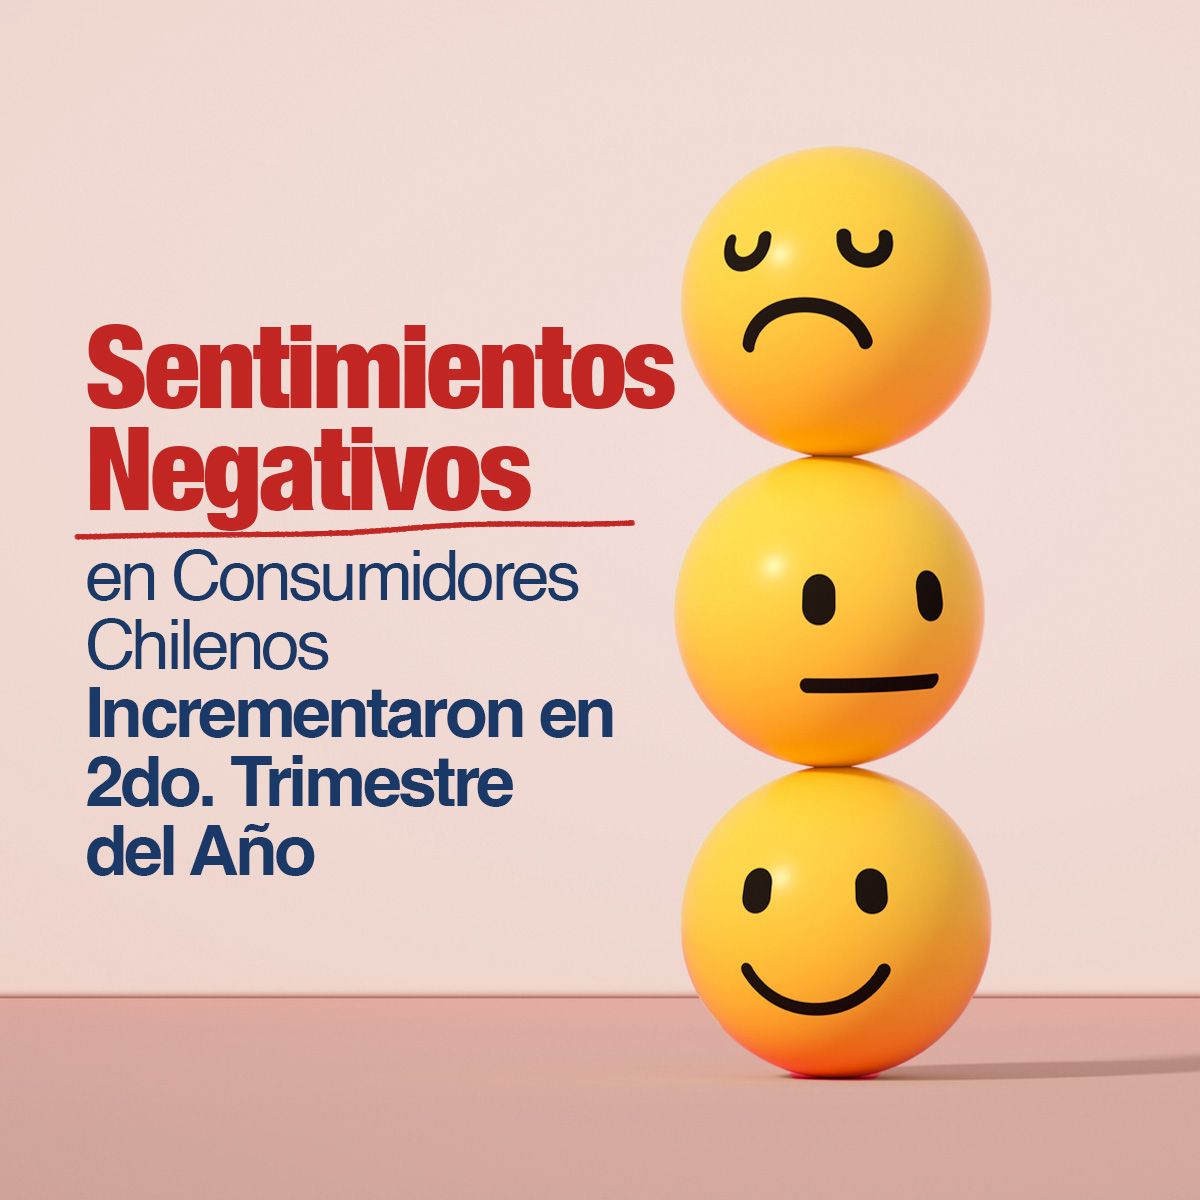 Sentimientos Negativos en Consumidores Chilenos Incrementaron en 2do. Trimestre del Año